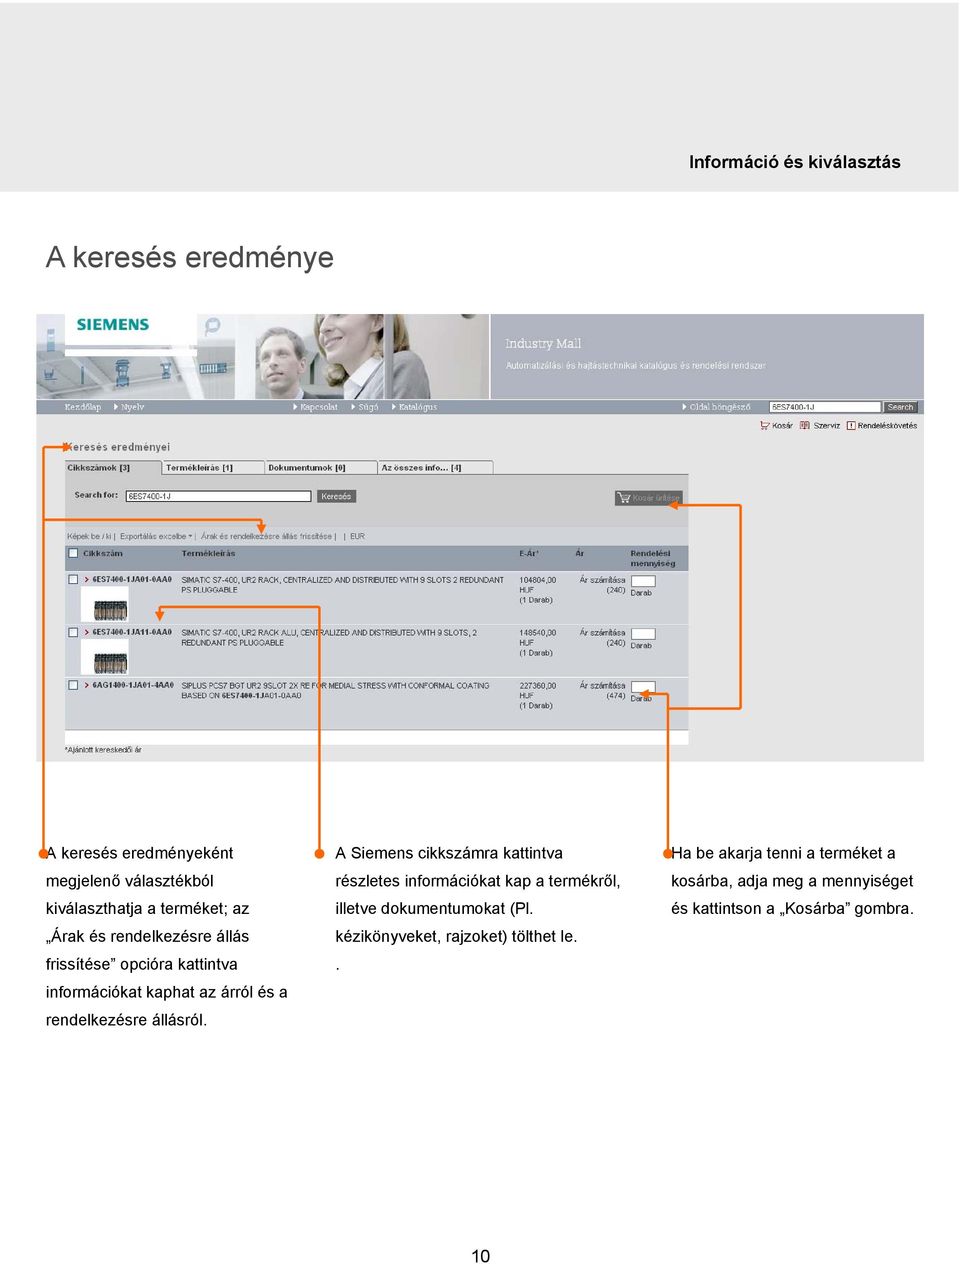 állásról. A Siemens cikkszámra kattintva részletes információkat kap a termékről, illetve dokumentumokat (Pl.